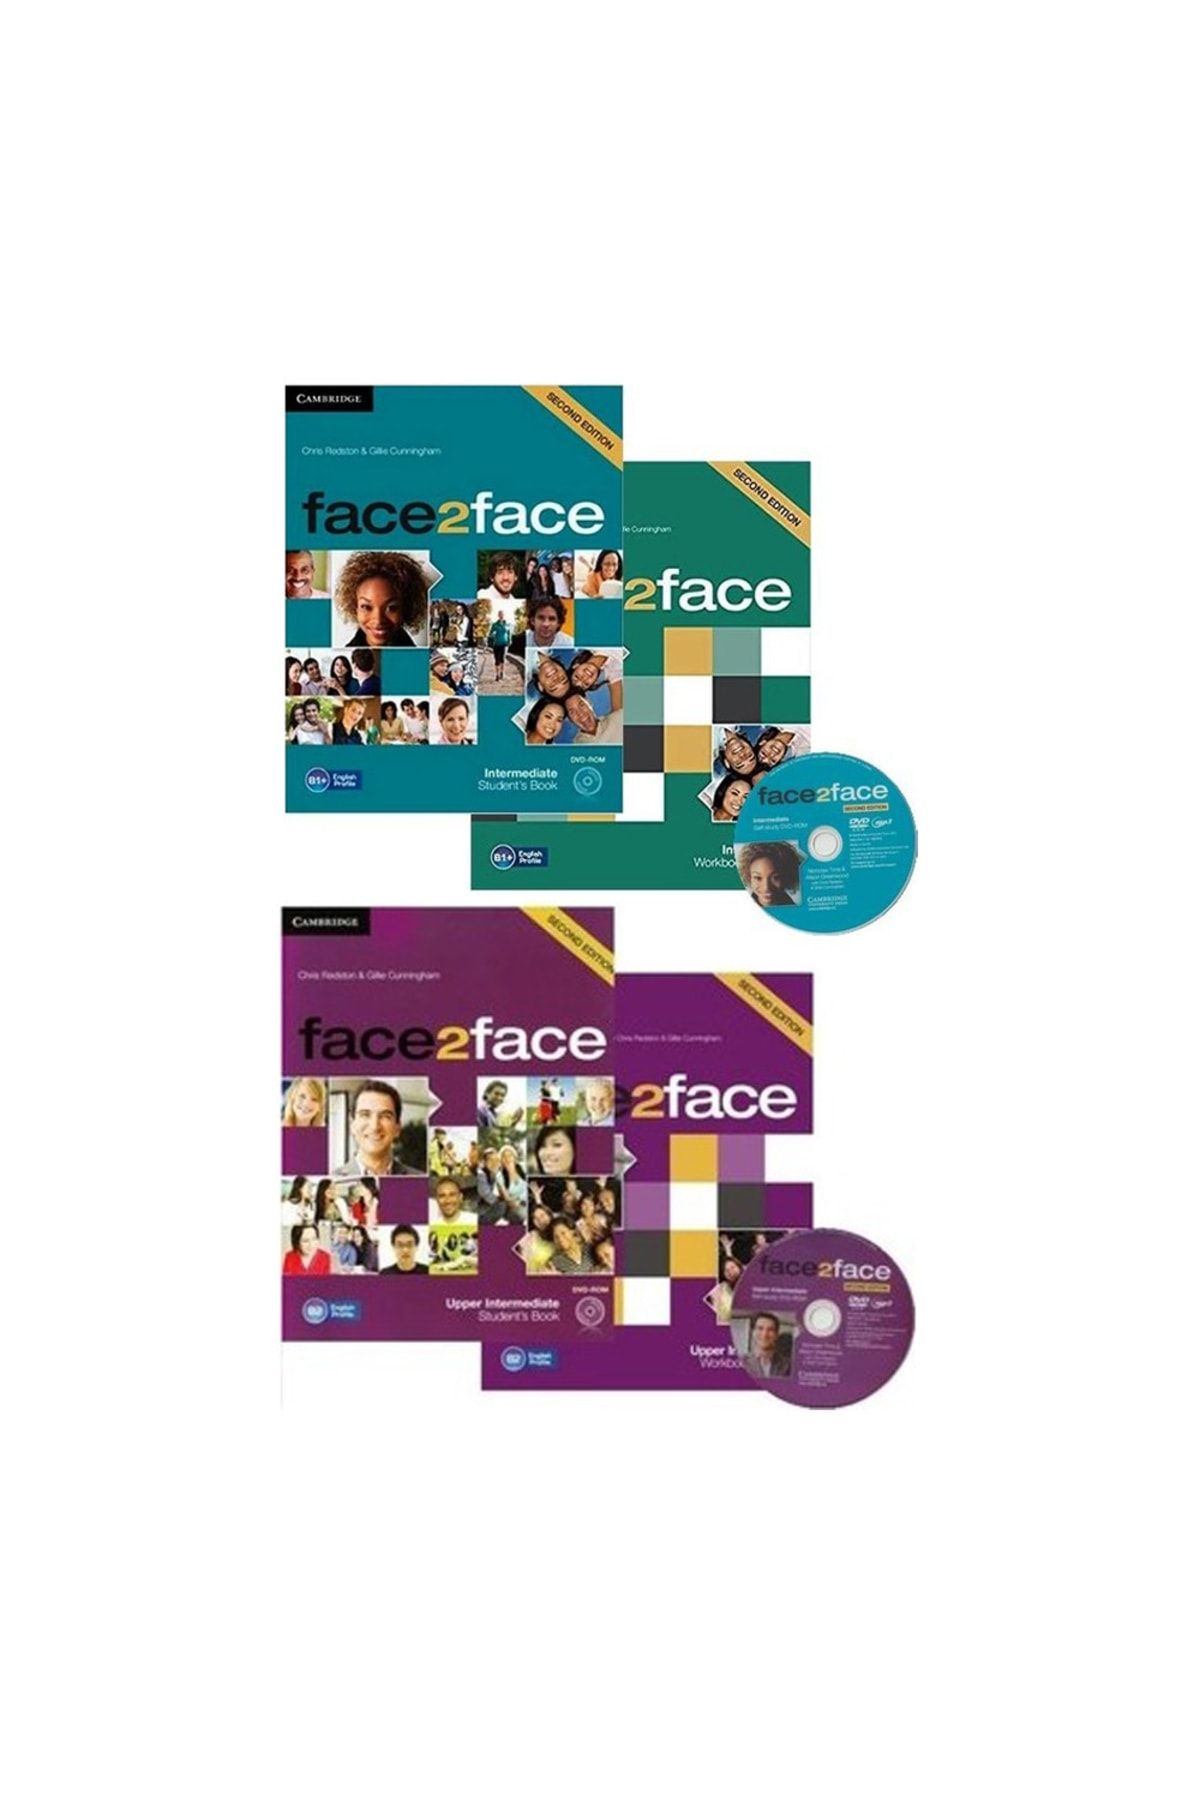 Intermedıate　Students　Book　Cambridge　Upper　Fiyatı,　Intermediate　Trendyol　University　Yorumları　Workbook　Face2face　Face2face　Dvd